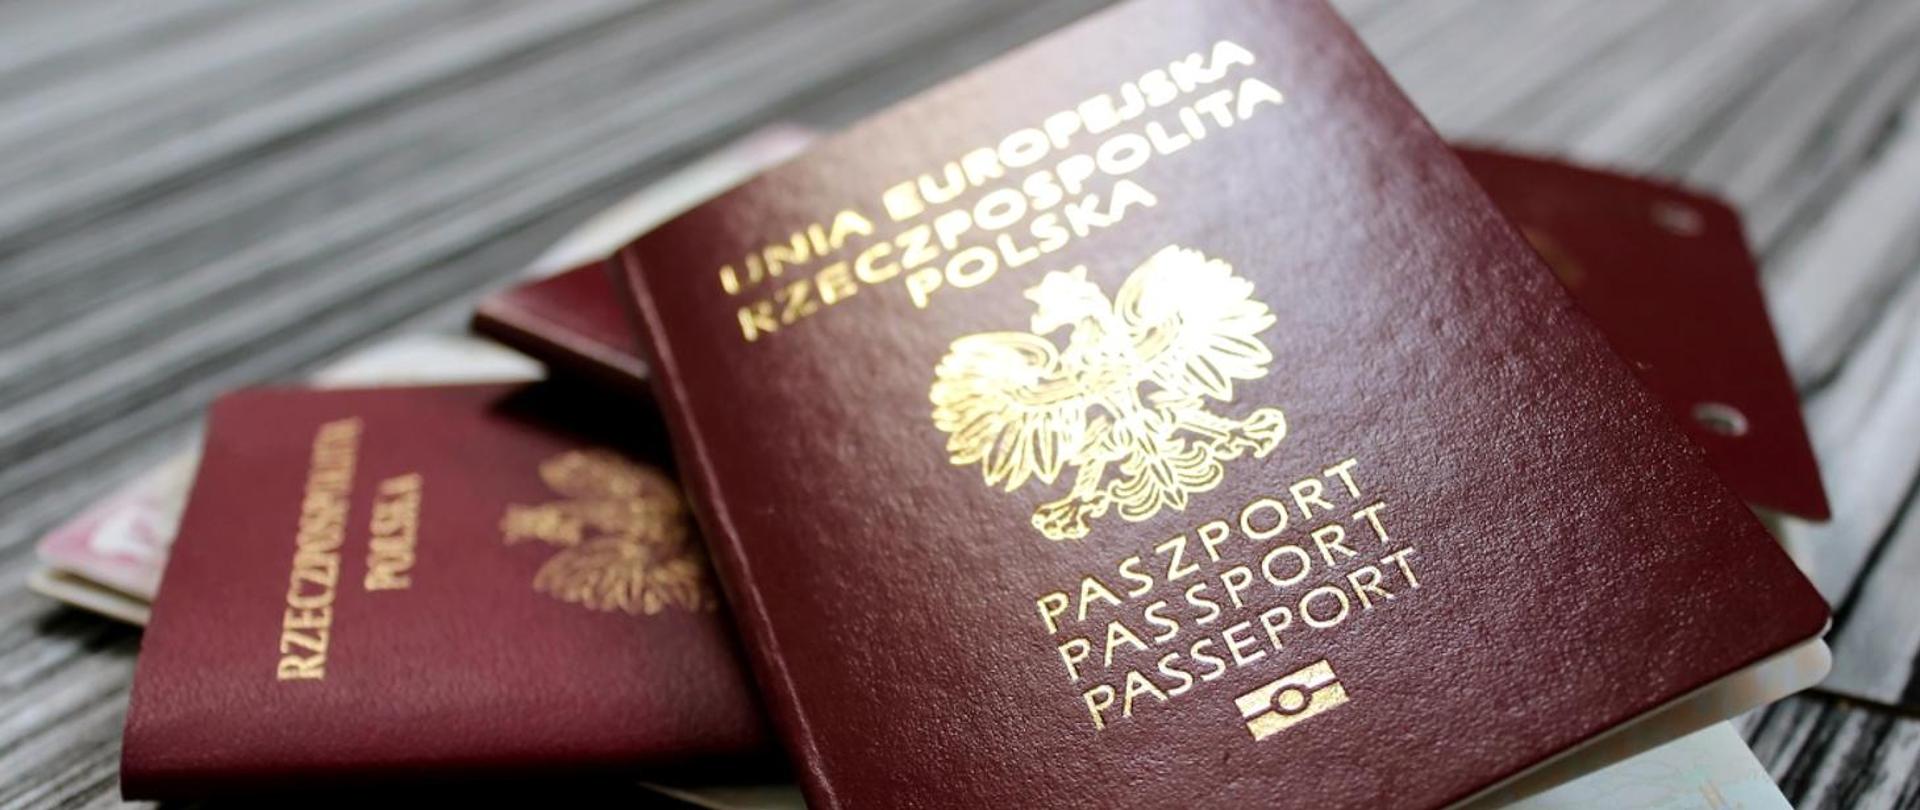 Uruchomienie nowego systemu paszportowego